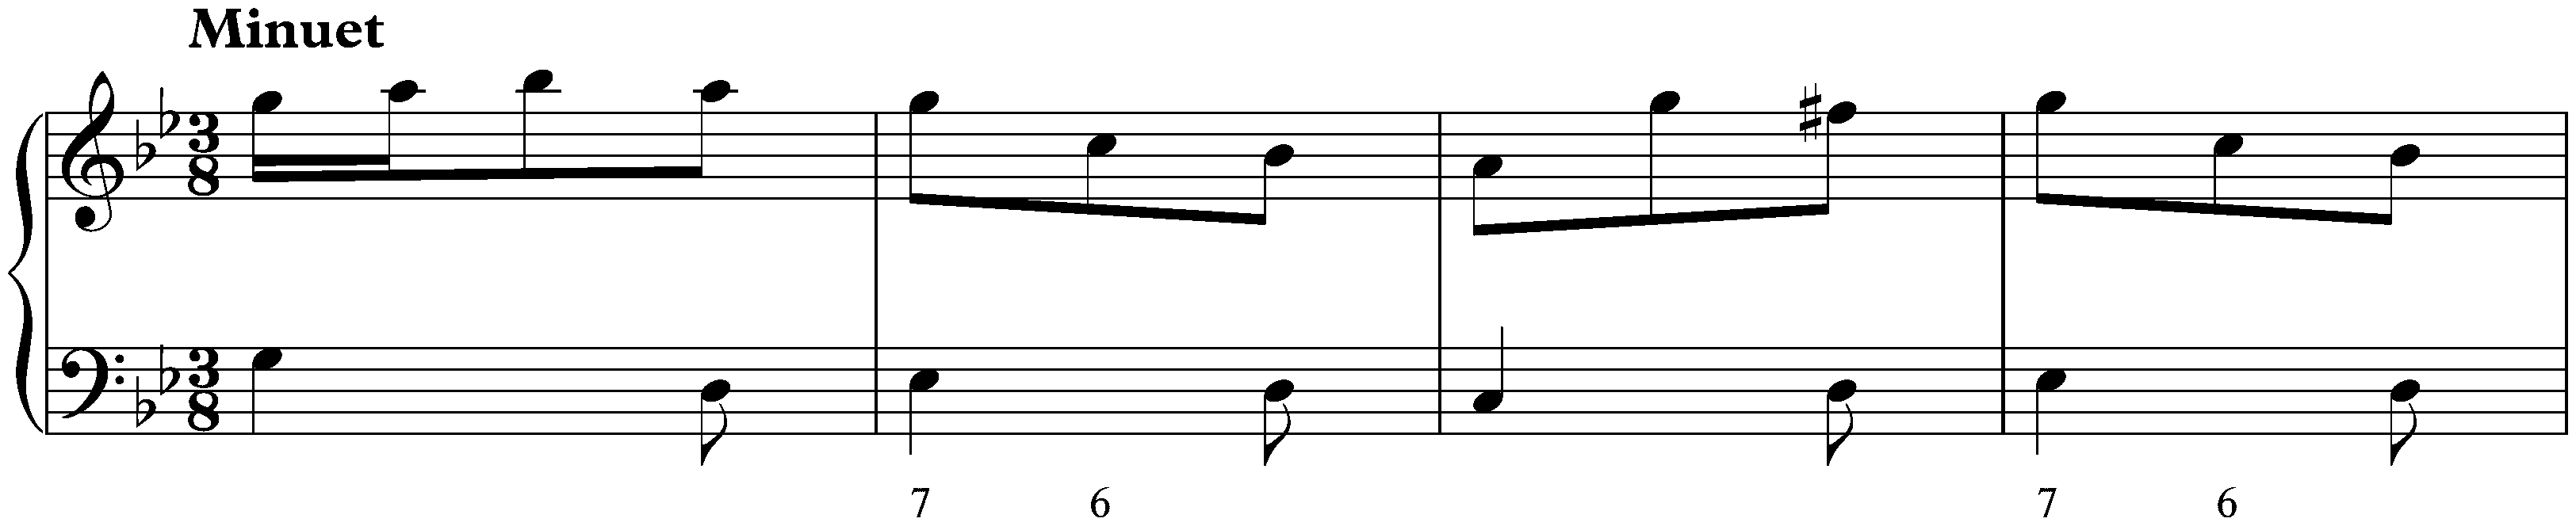 Sonata in G minor, K. 88; 4. Minuet